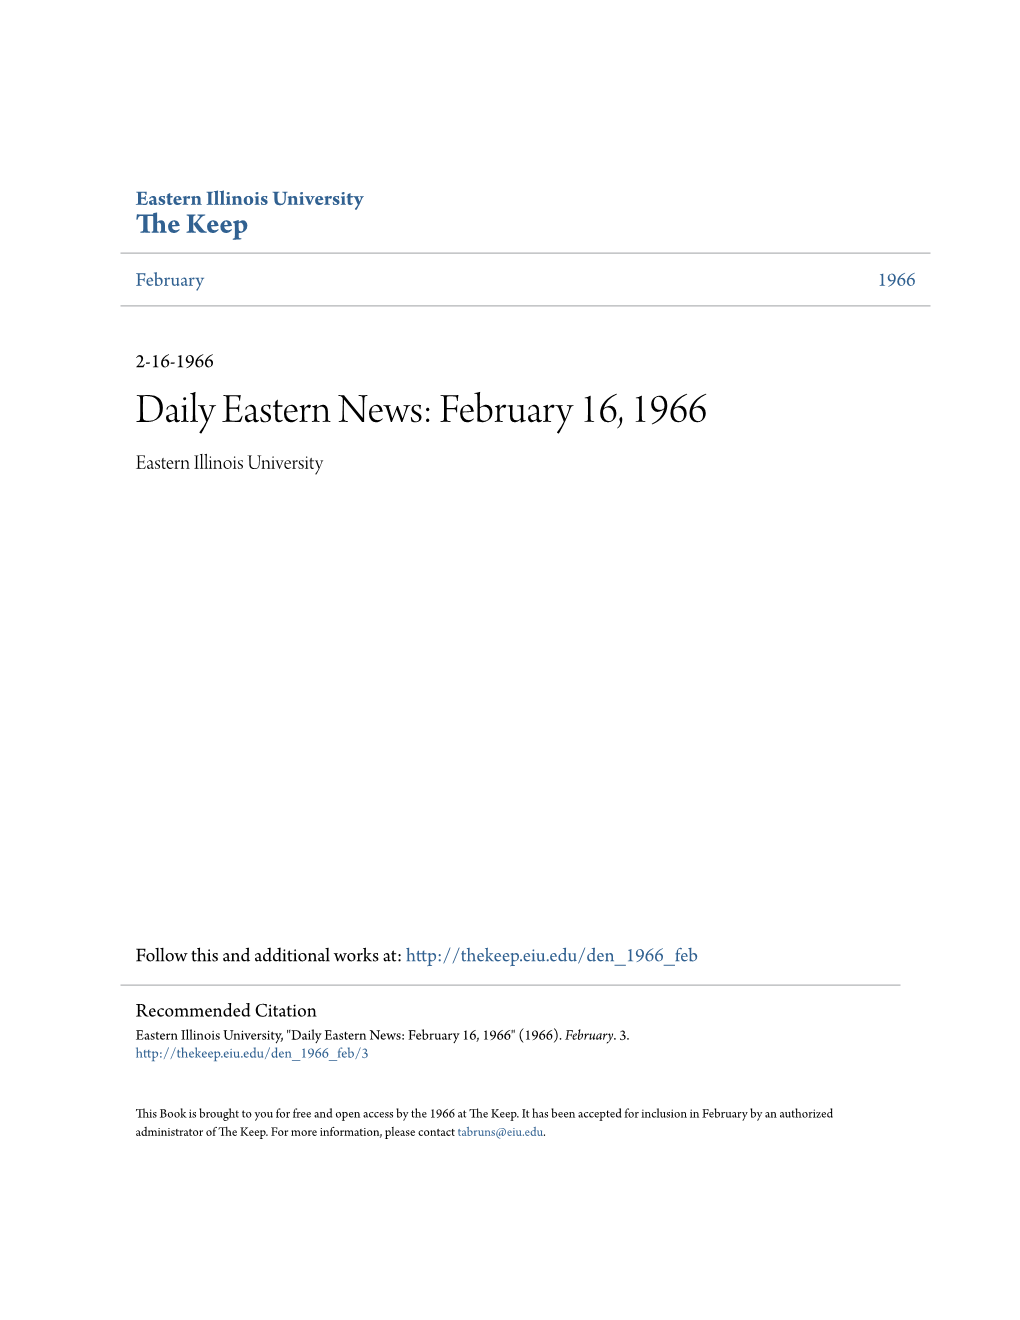 Eastern News: February 16, 1966 Eastern Illinois University